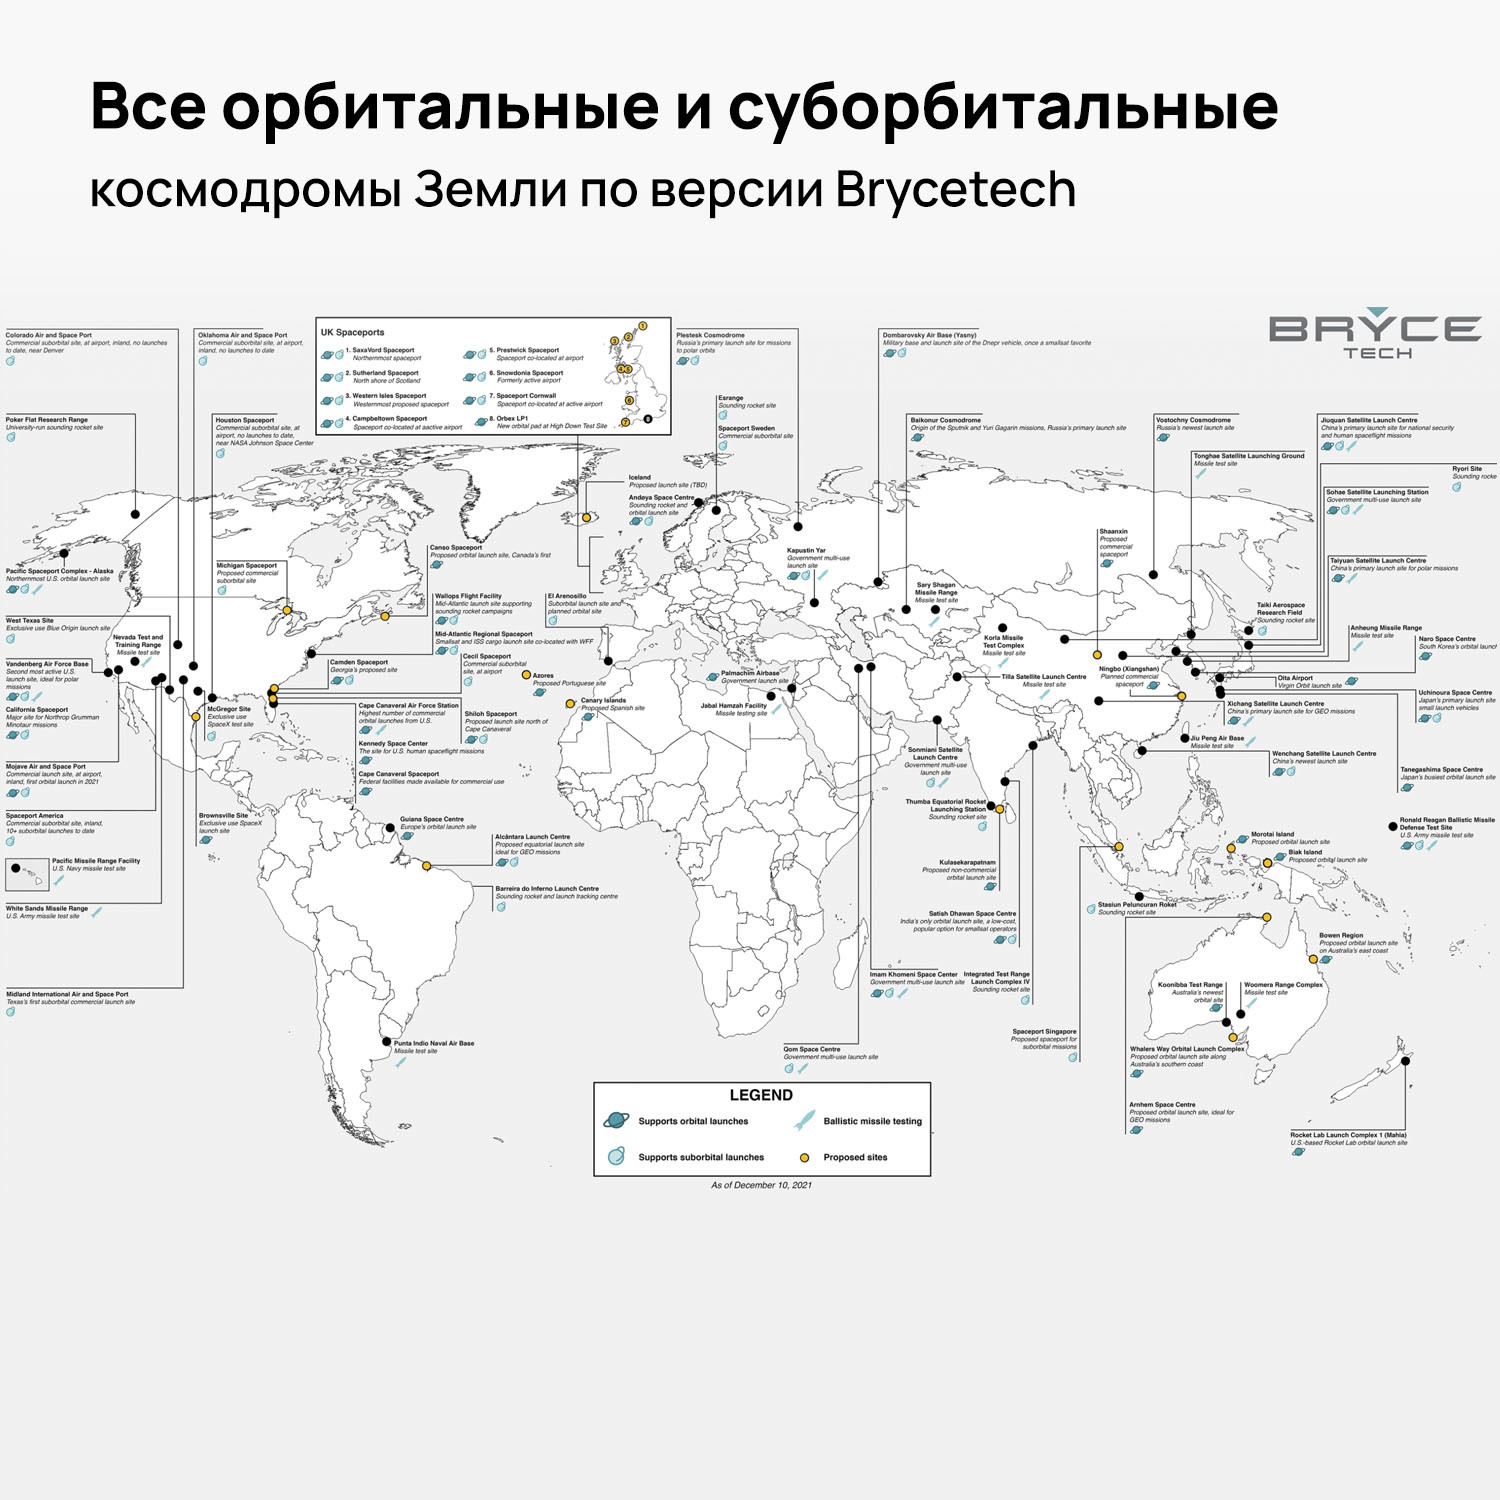 Где в россии космодромы на карте